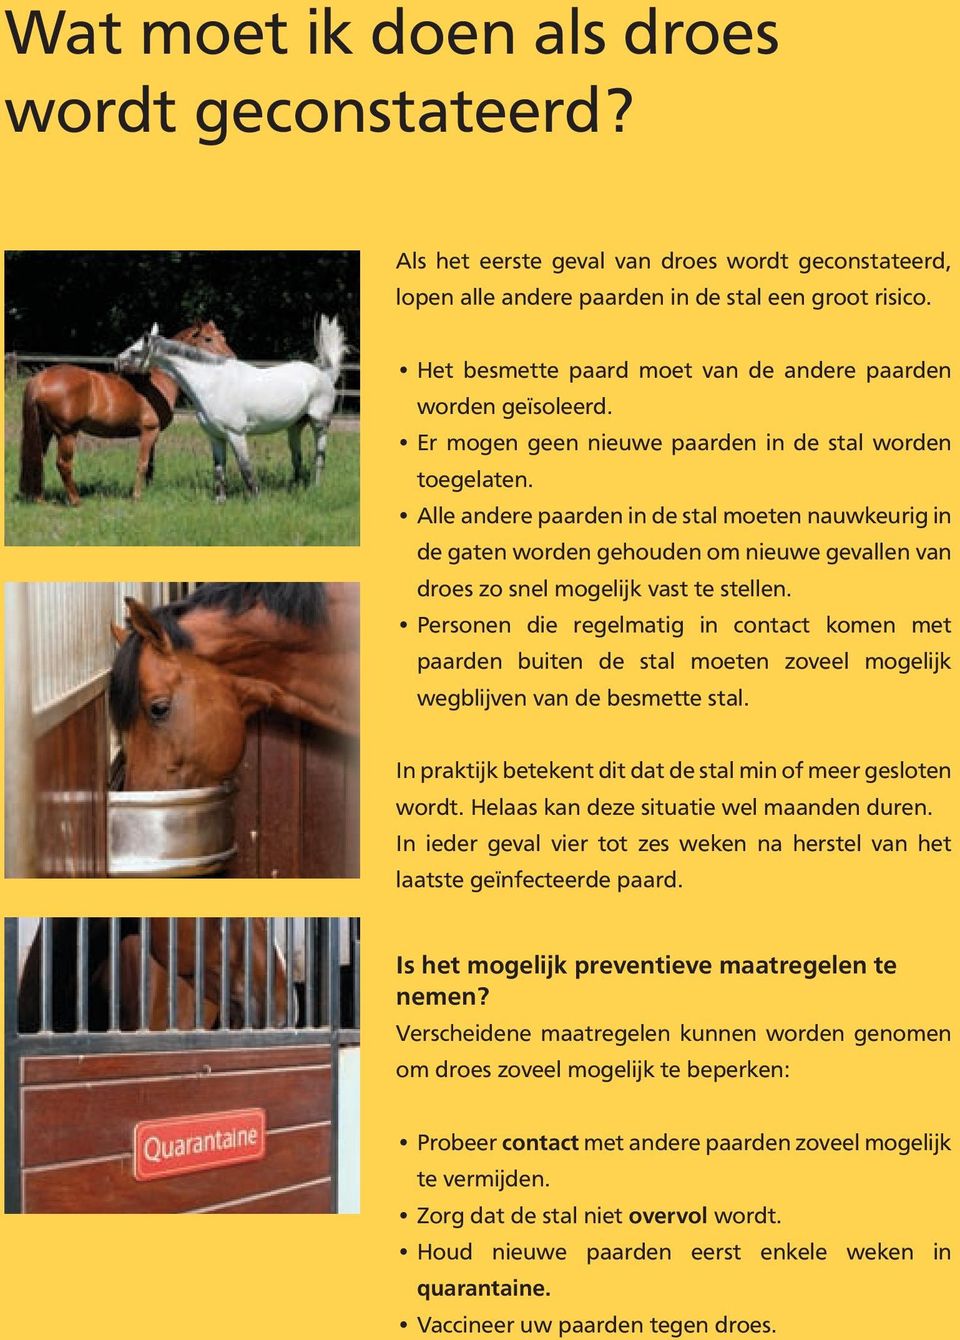 Alle andere paarden in de stal moeten nauwkeurig in de gaten worden gehouden om nieuwe gevallen van droes zo snel mogelijk vast te stellen.